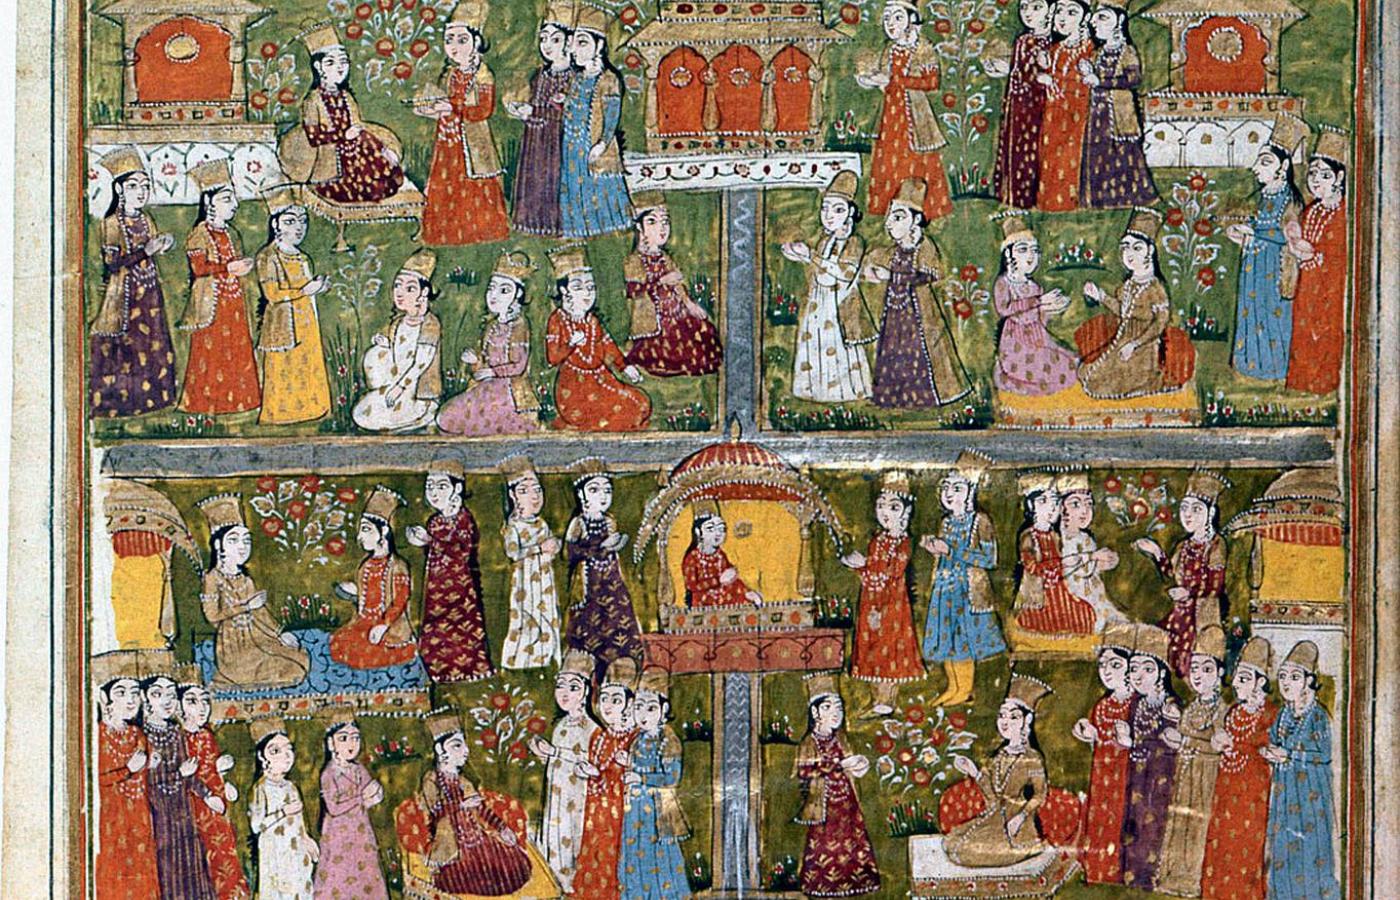 Mahomet w raju w otoczeniu hurys. Ilustracja z 1030 r.